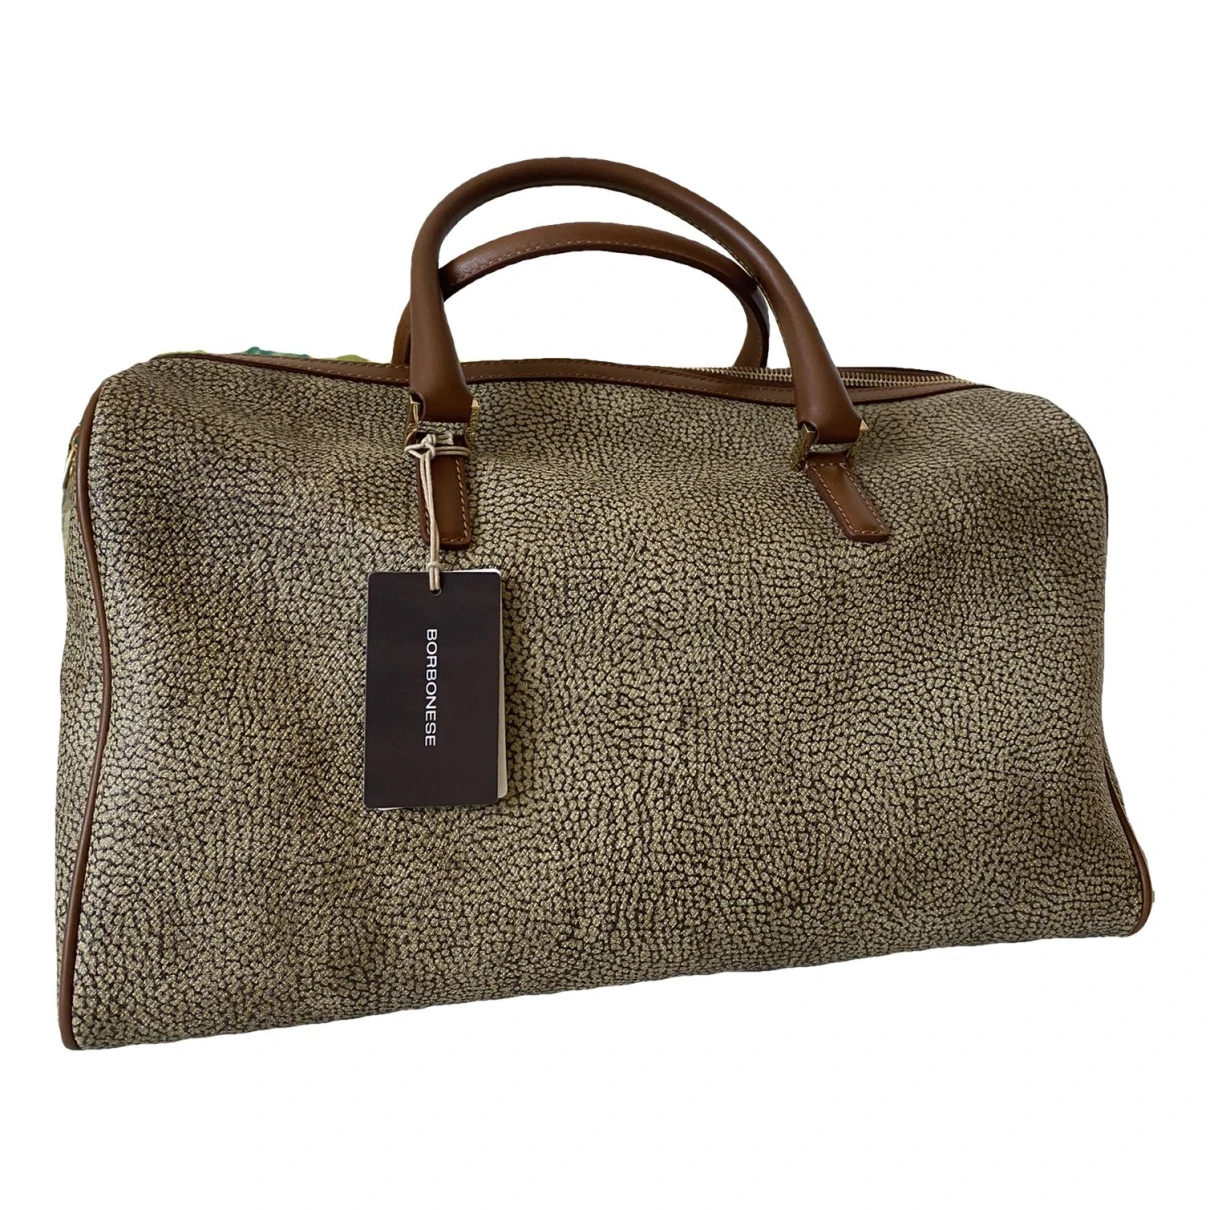 Pre-owned Borbonese Handbag In Beige